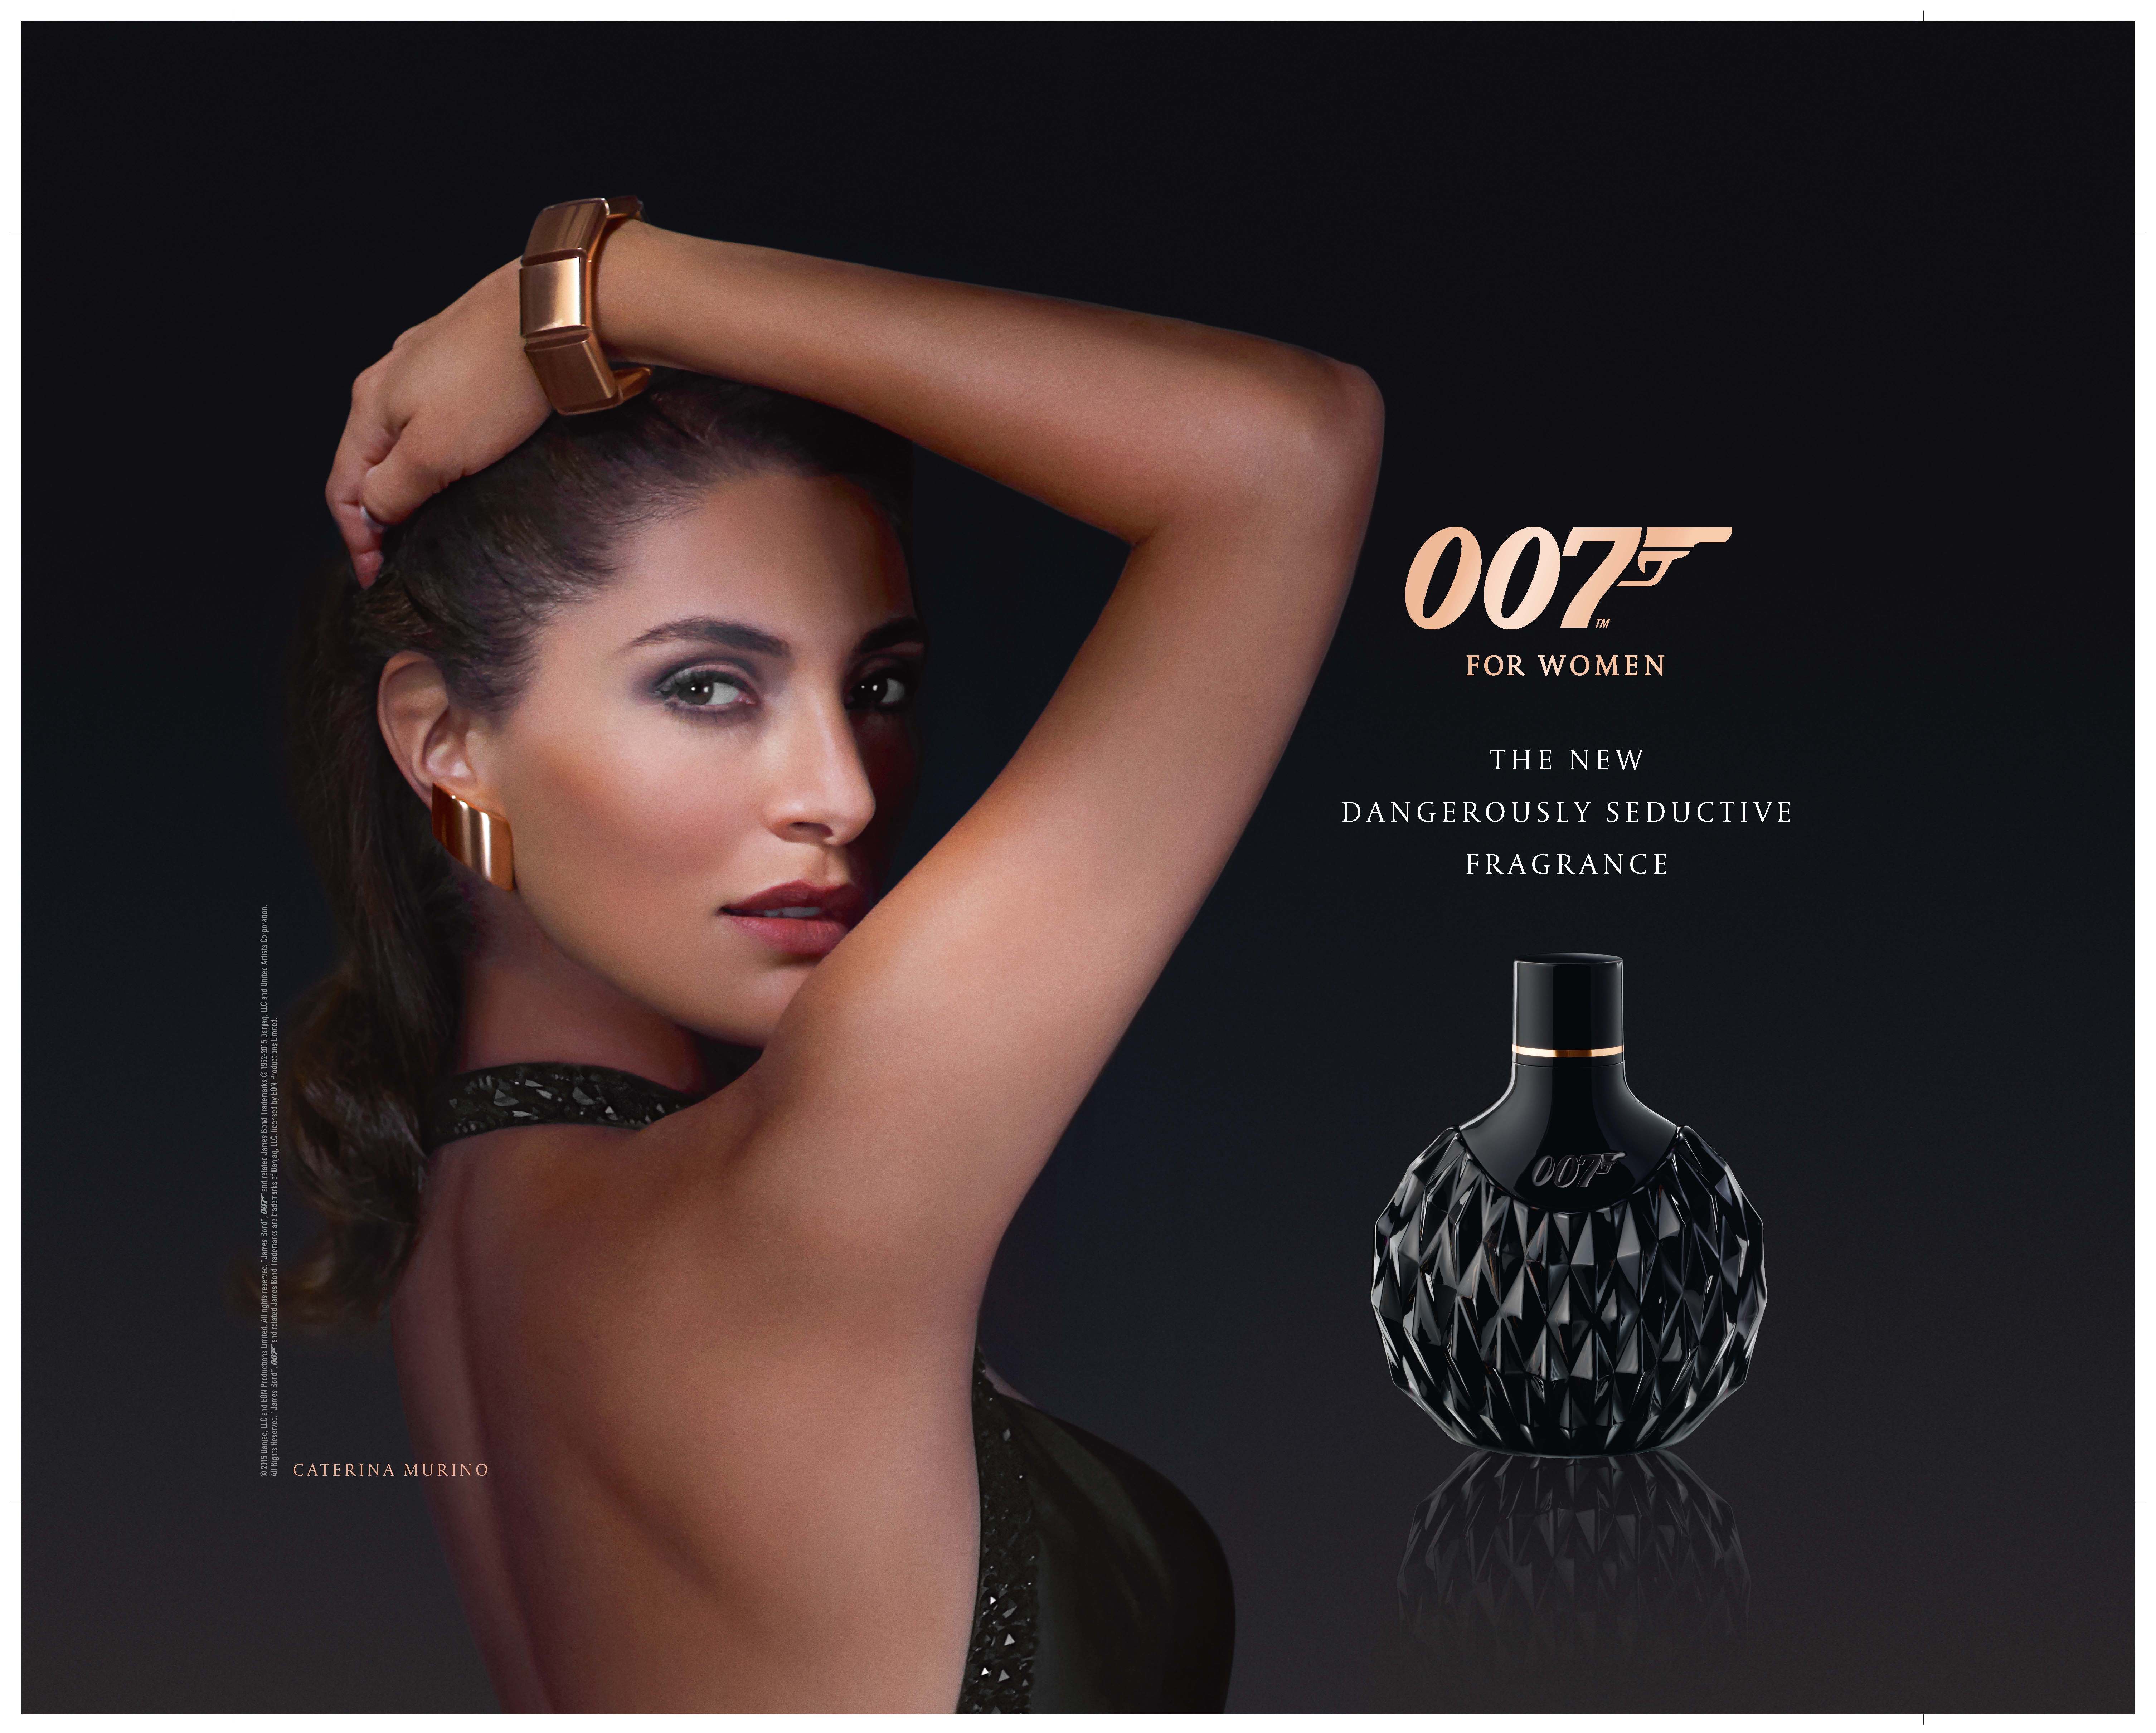 James Bond fragrance women